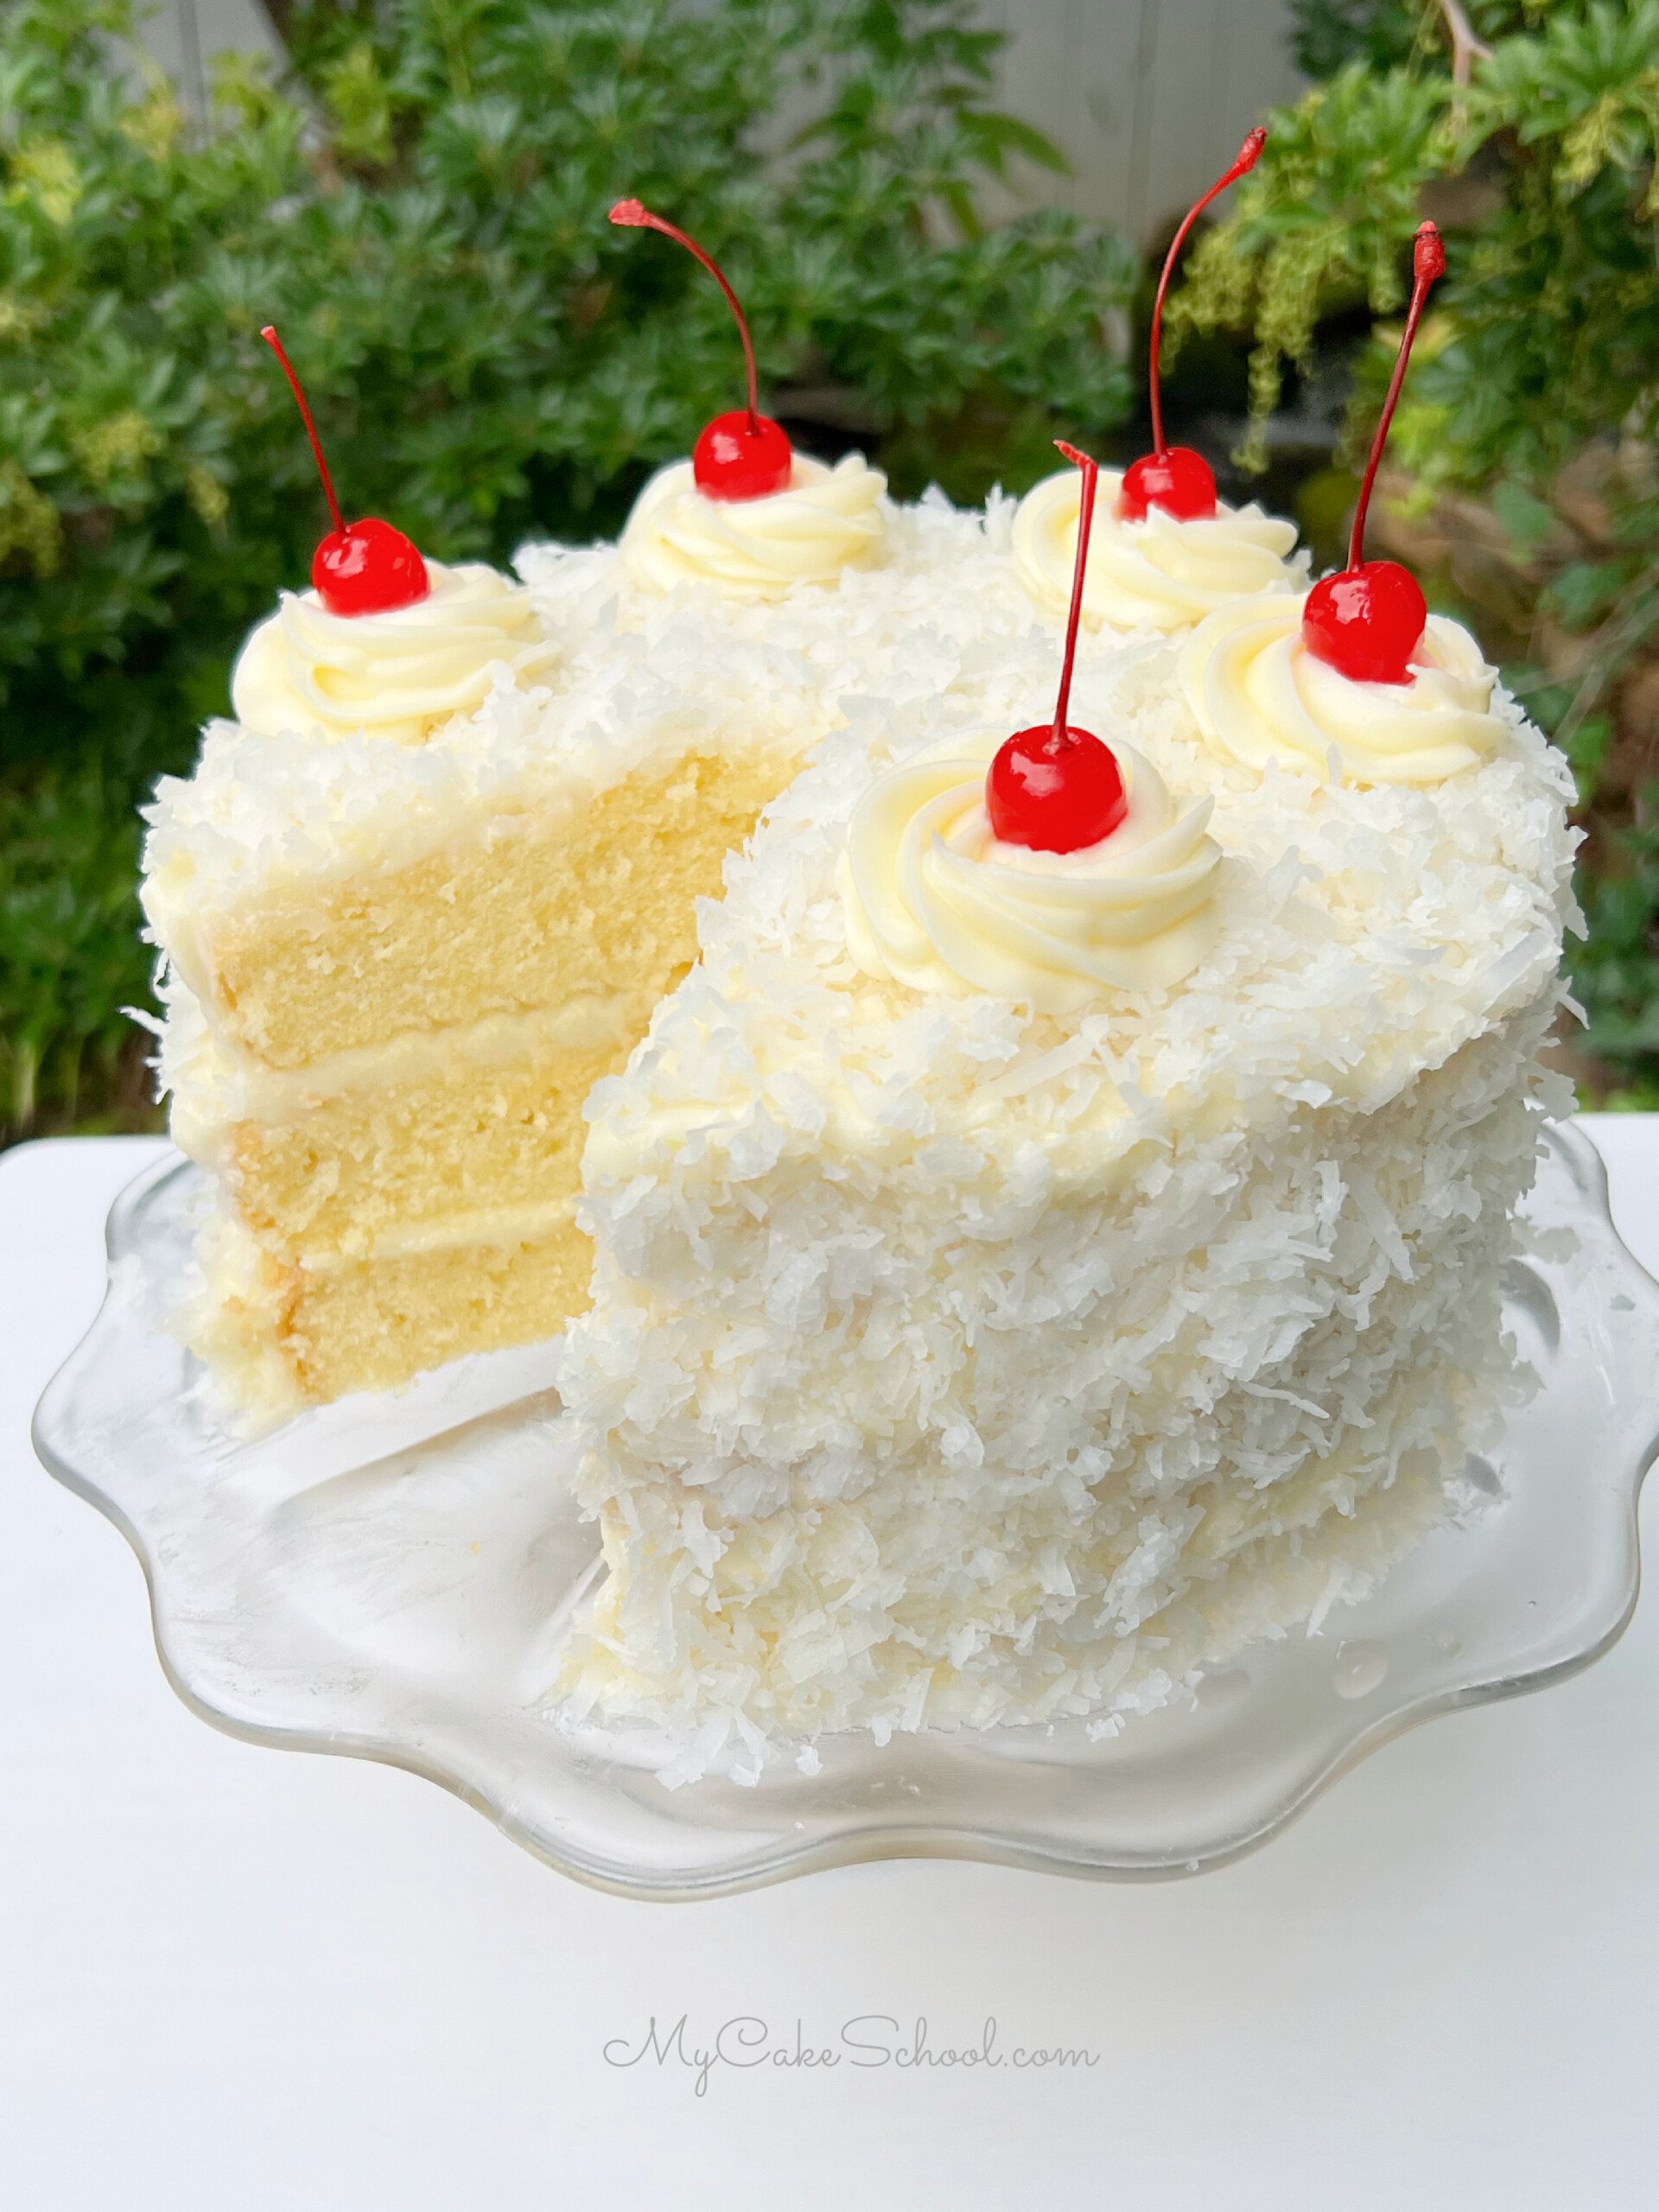 Pina Colada Cake, sliced, on a glass pedestal.